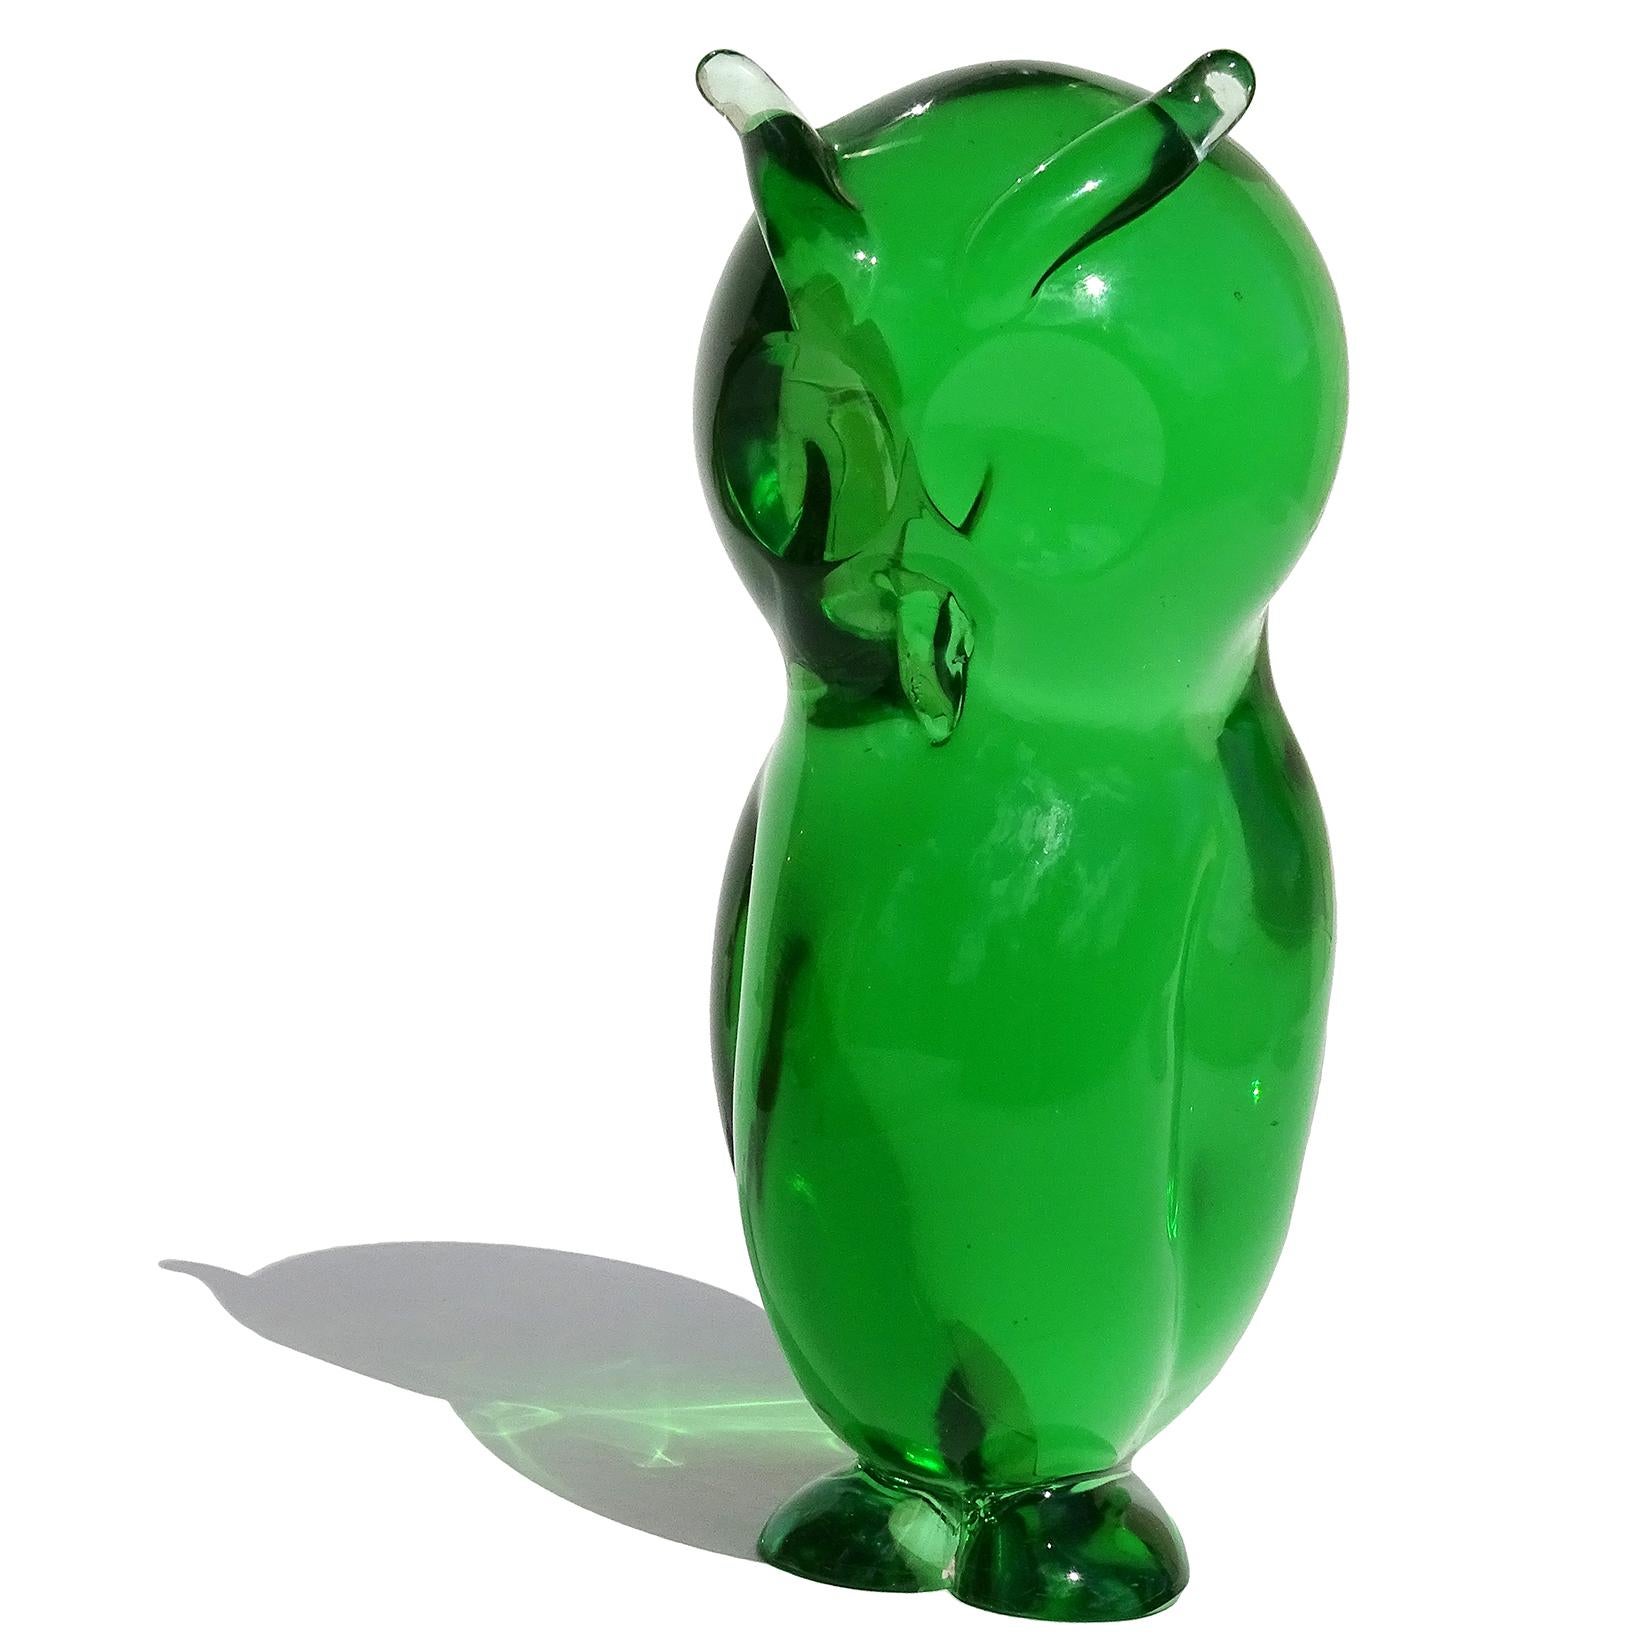 Schöne Vintage Murano mundgeblasen Sommerso grün italienische Kunst Glas gehörnten Eule Vogel Skulptur. Dokumentiert für den Designer Archimede Seguso. Ich habe persönlich eine andere Eule besessen, die mit diesem Stück identisch ist, in einer